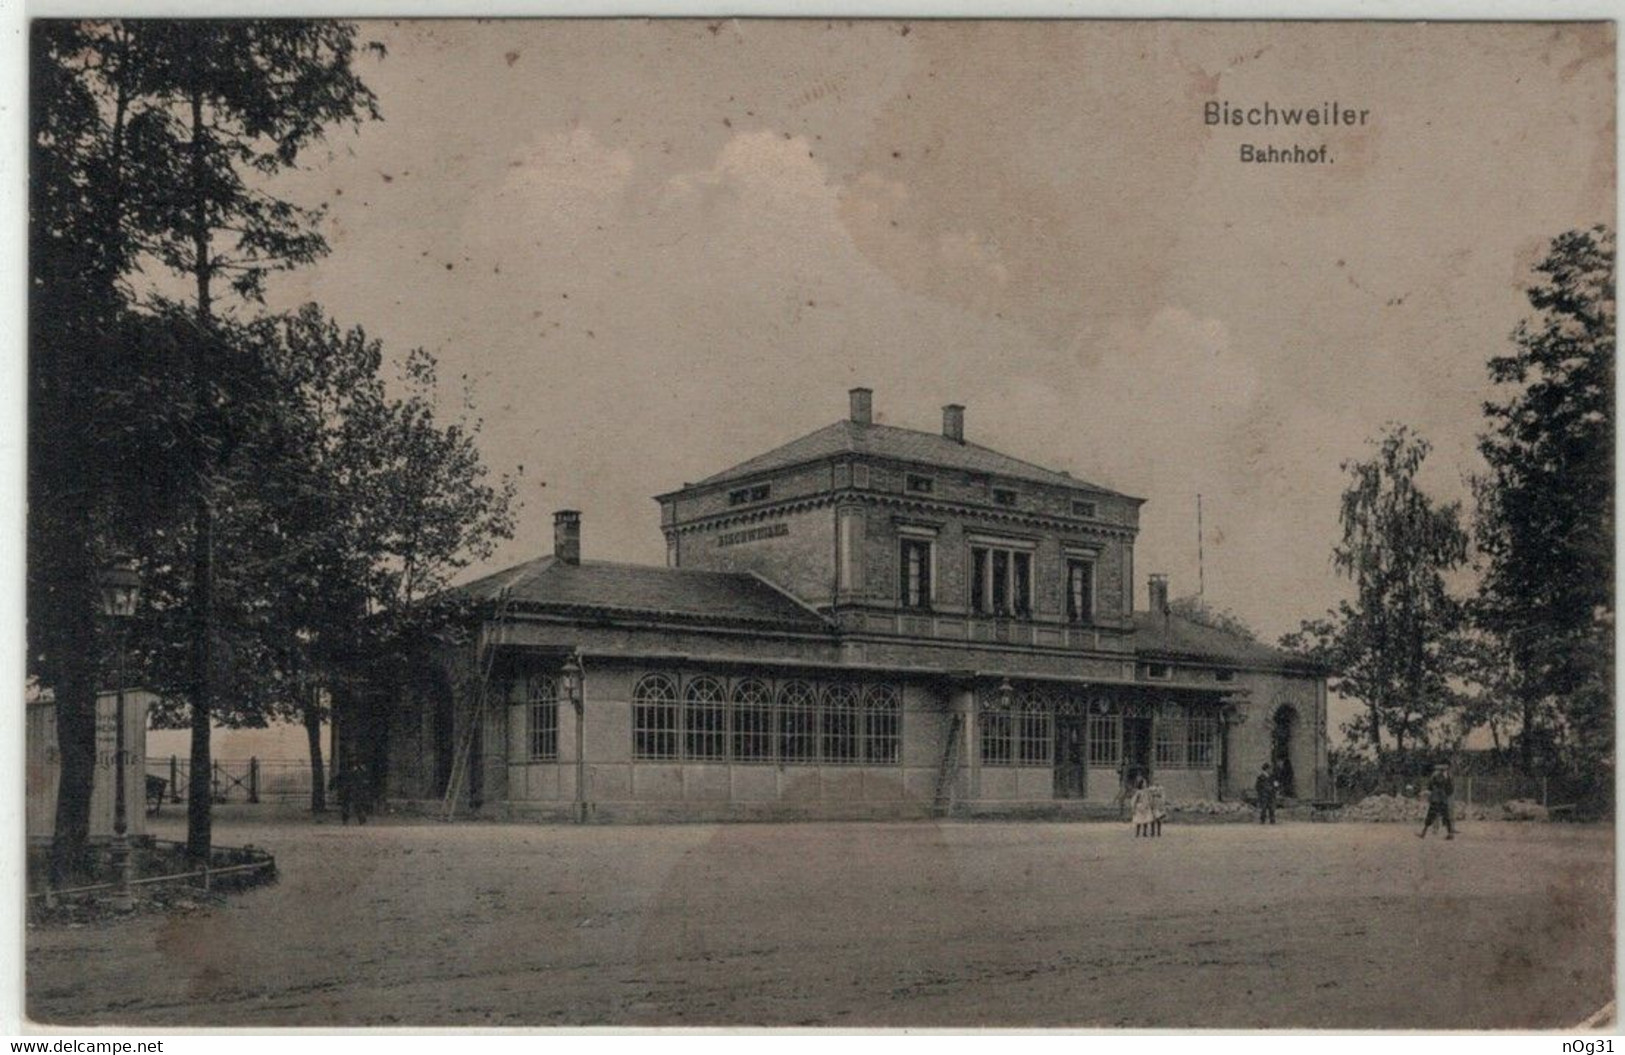 67 - Bischweiler (Bischwiller) - Bahnhof (gare). - Bischwiller